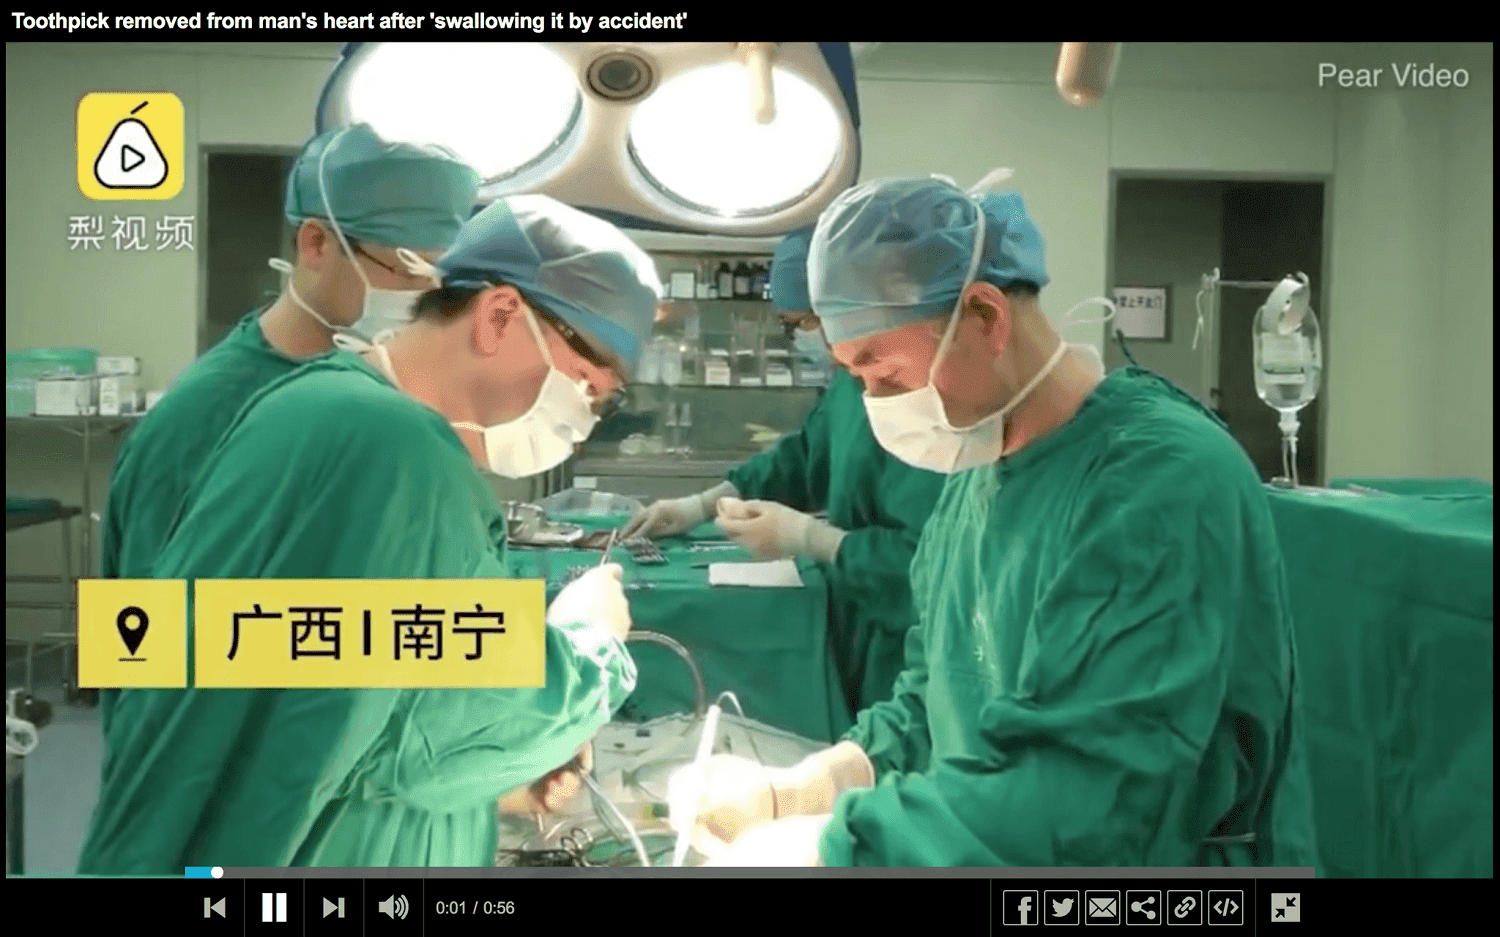 Momento de la extracción del objeto en el corazón del paciente. | Imagen: YouTube/allinone tv 